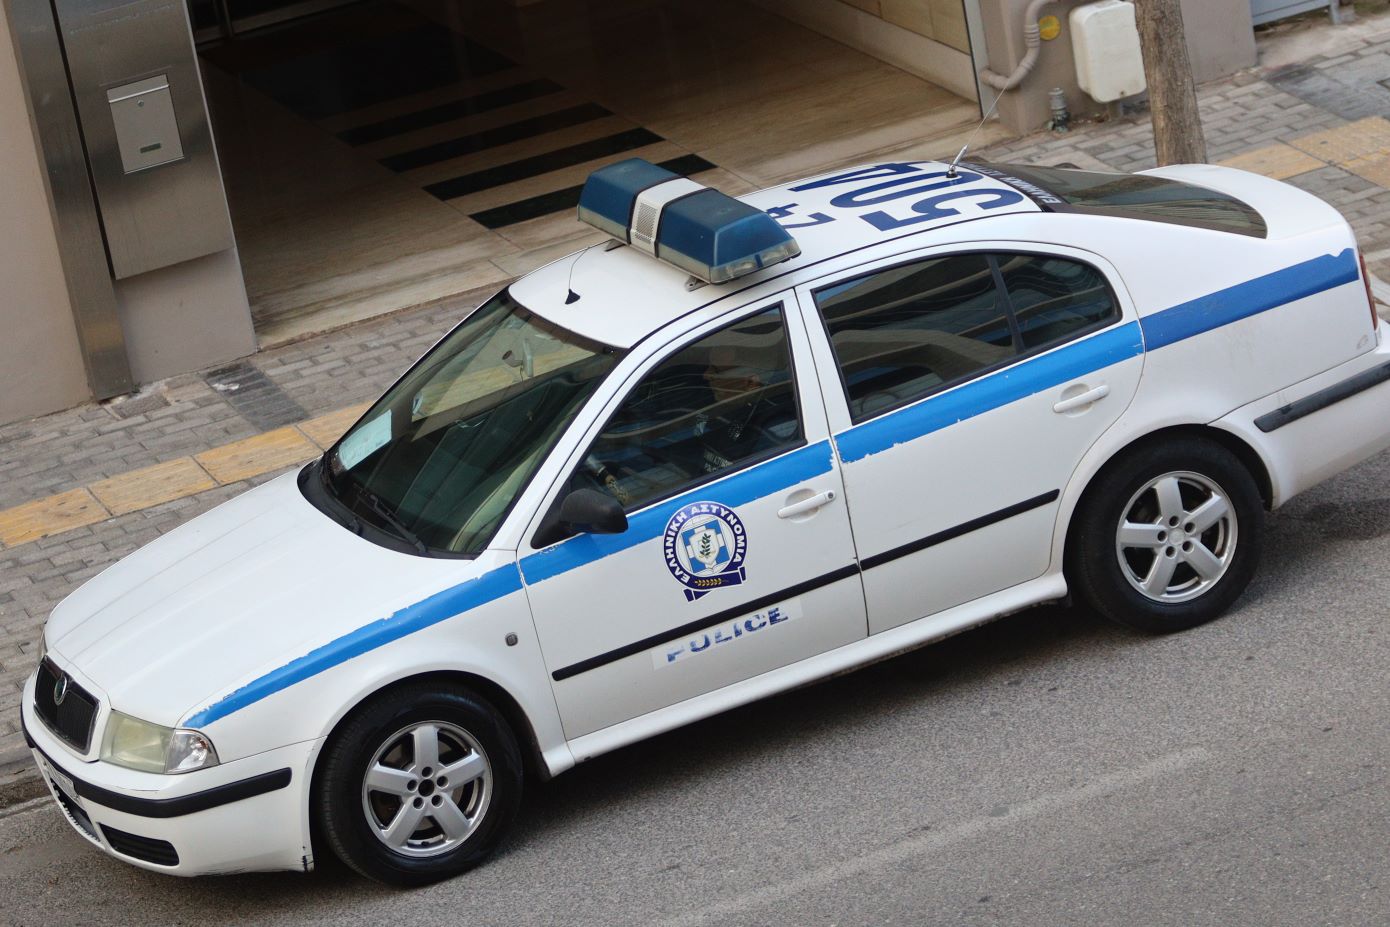 Αυτοκίνητο που μετέφερε παράνομα μετανάστες προσέκρουσε σε οικία στην Ορεστιάδα